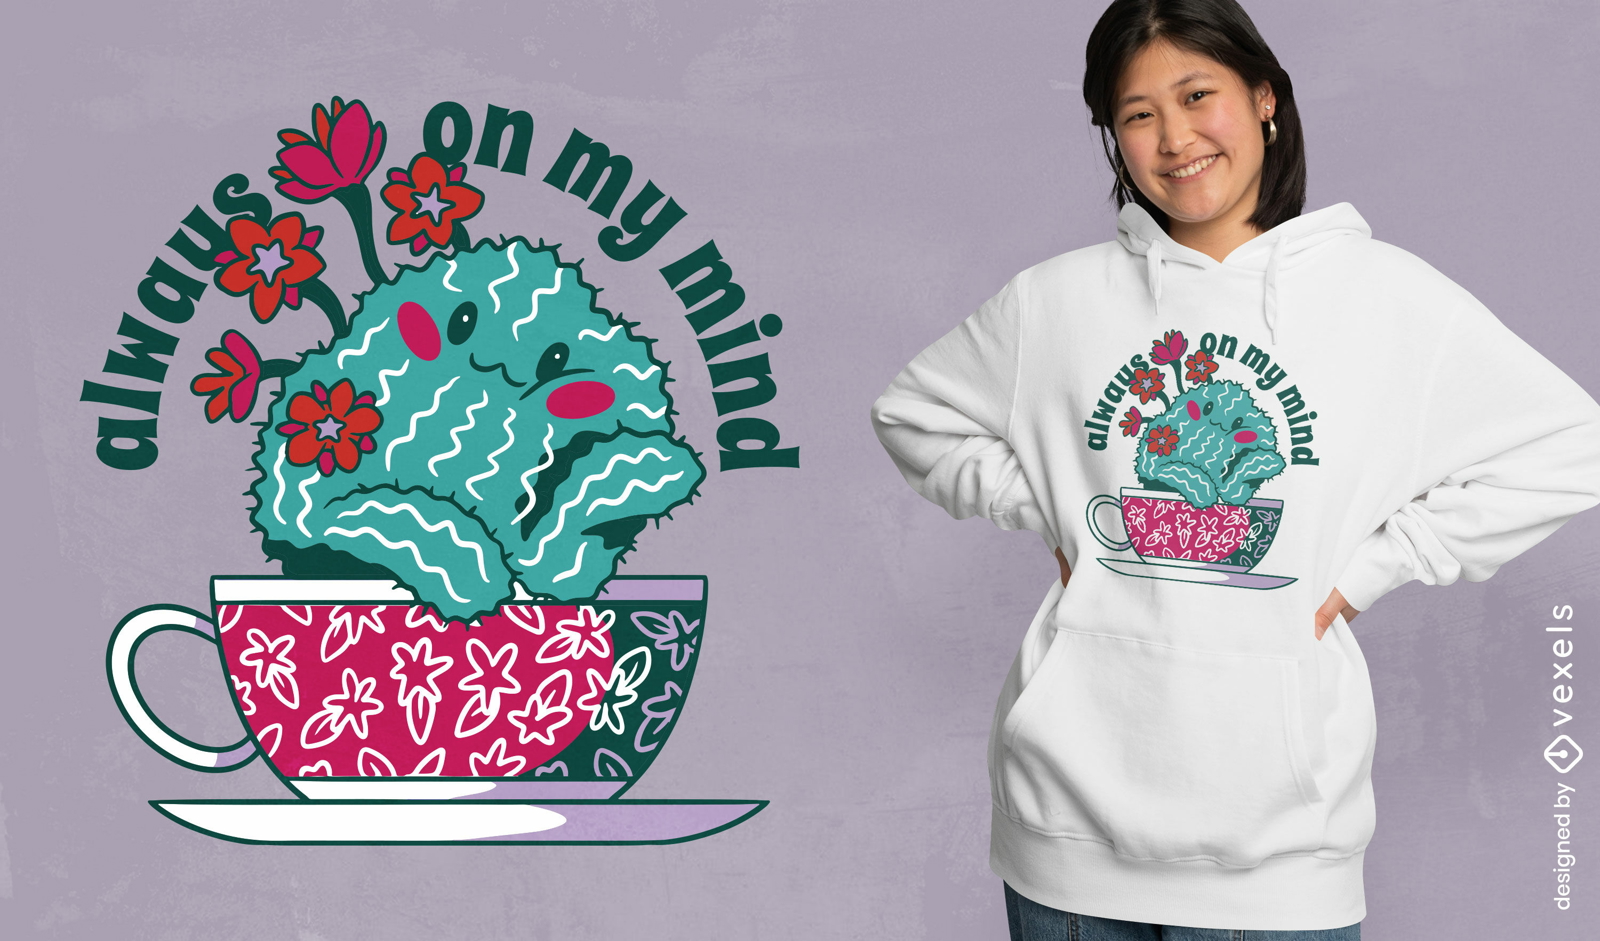 Thoughtful cactus teacup t-shirt design